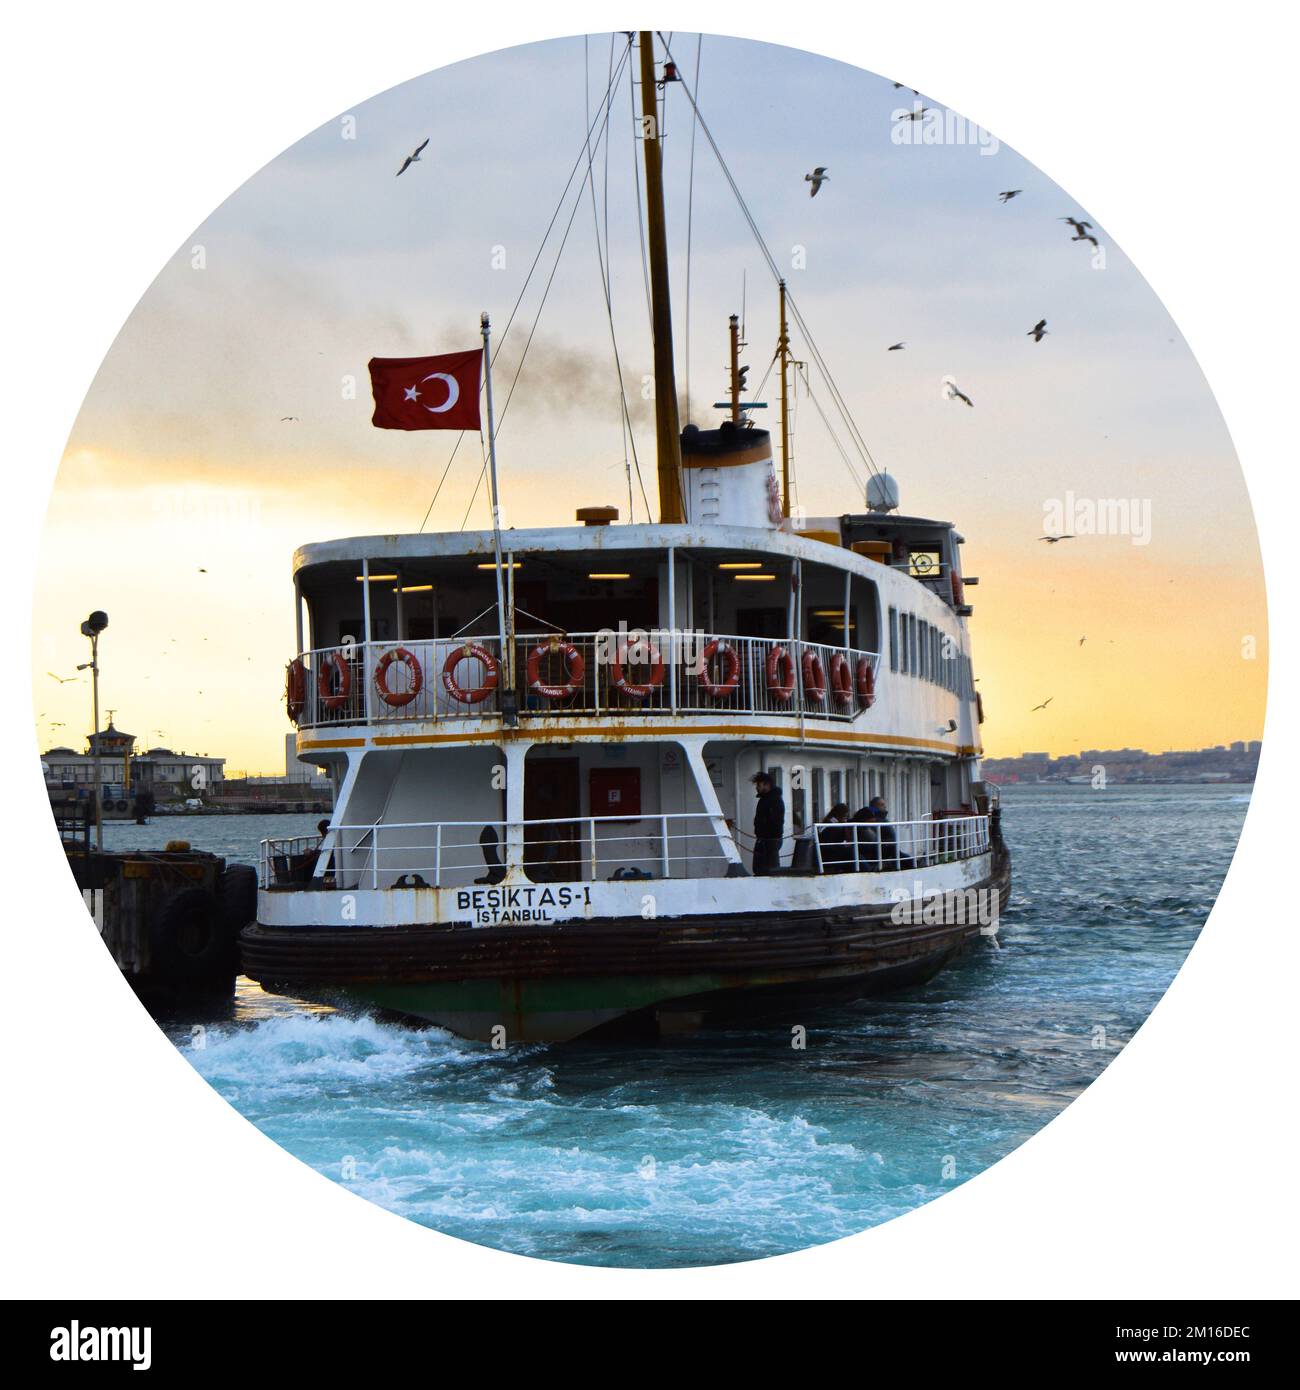 Bateau de croisière blanc transport en ferry, transportant des passagers, symbole d'istanbul, 23 mars 2019 Kadikoy Istanbul Turquie Banque D'Images